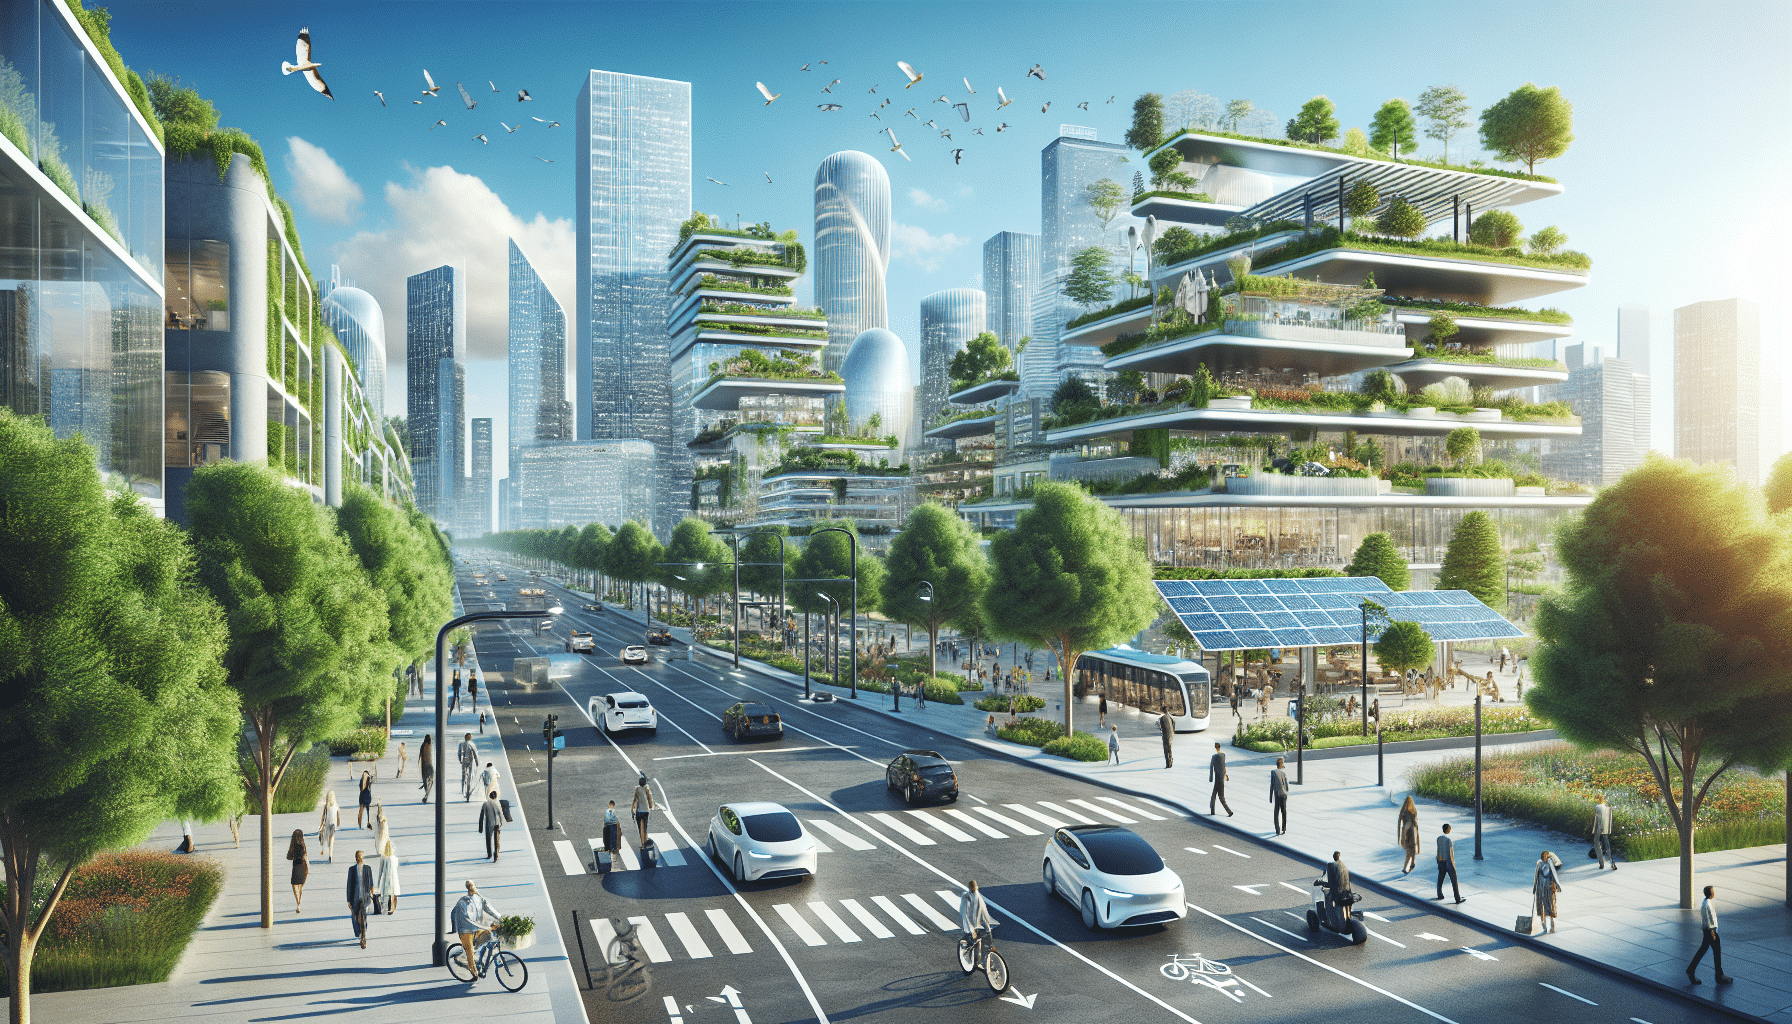 descubre el futuro urbano desvelado con ciudades inteligentes